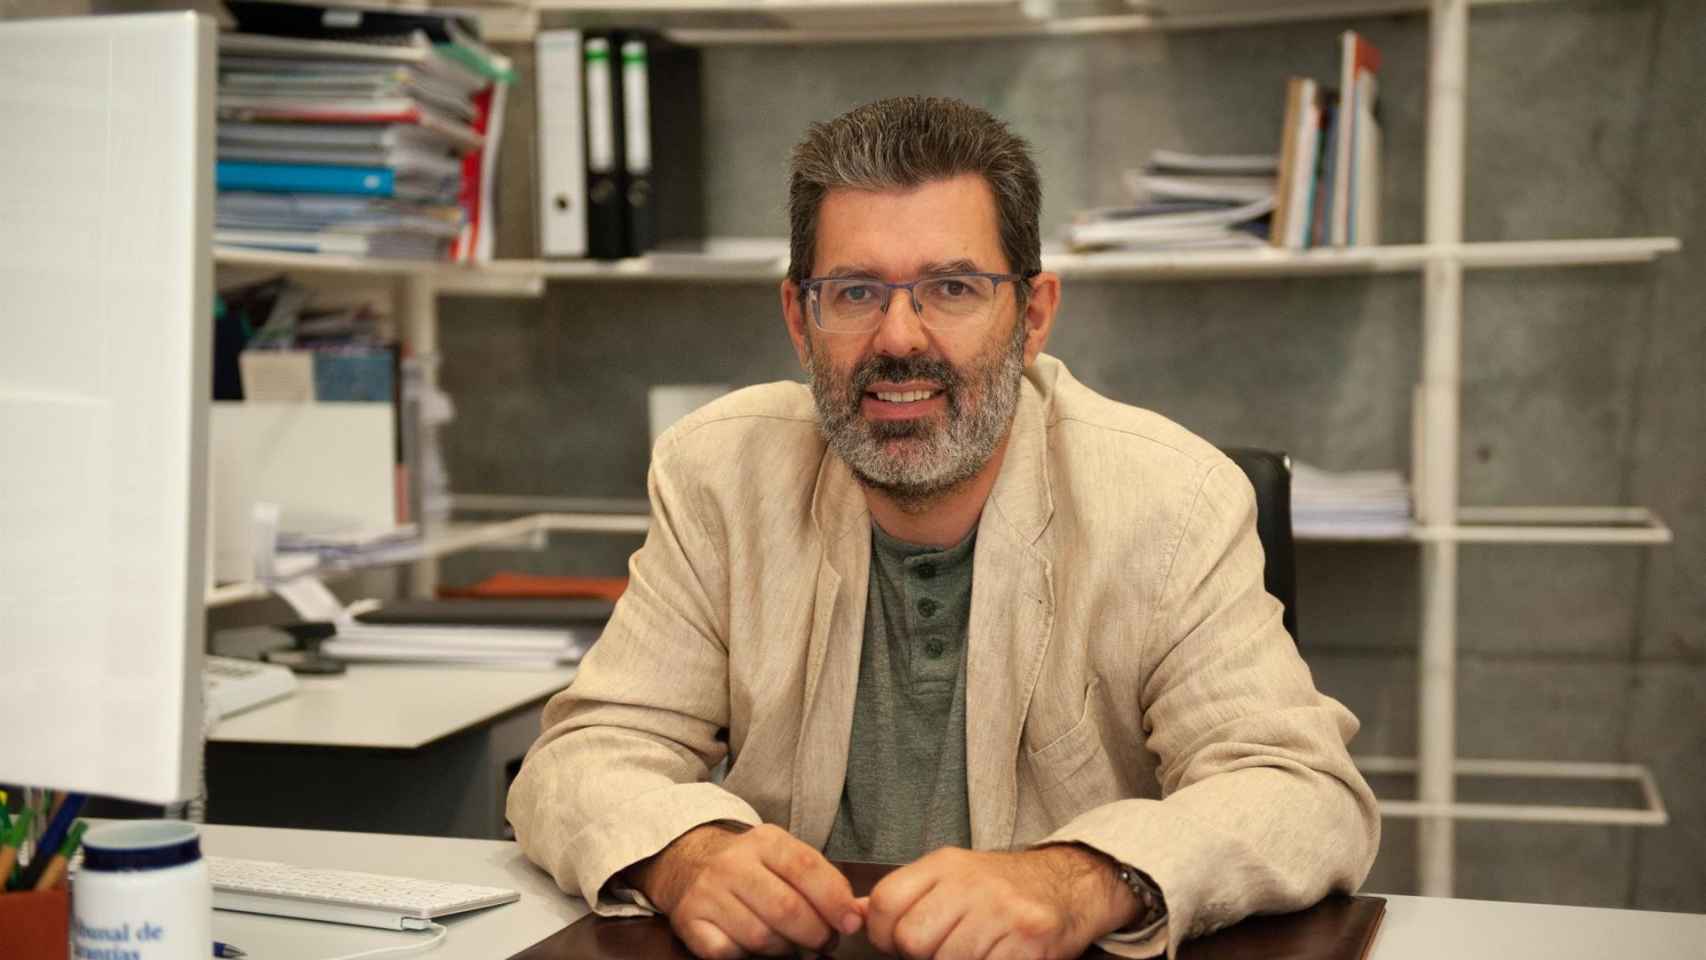 El vicerrector de Ordenación Académica y Profesorado de la UVigo, Manuel Ramos Cabrer, fallecido repentinamente el 3 de mayo de 2022.